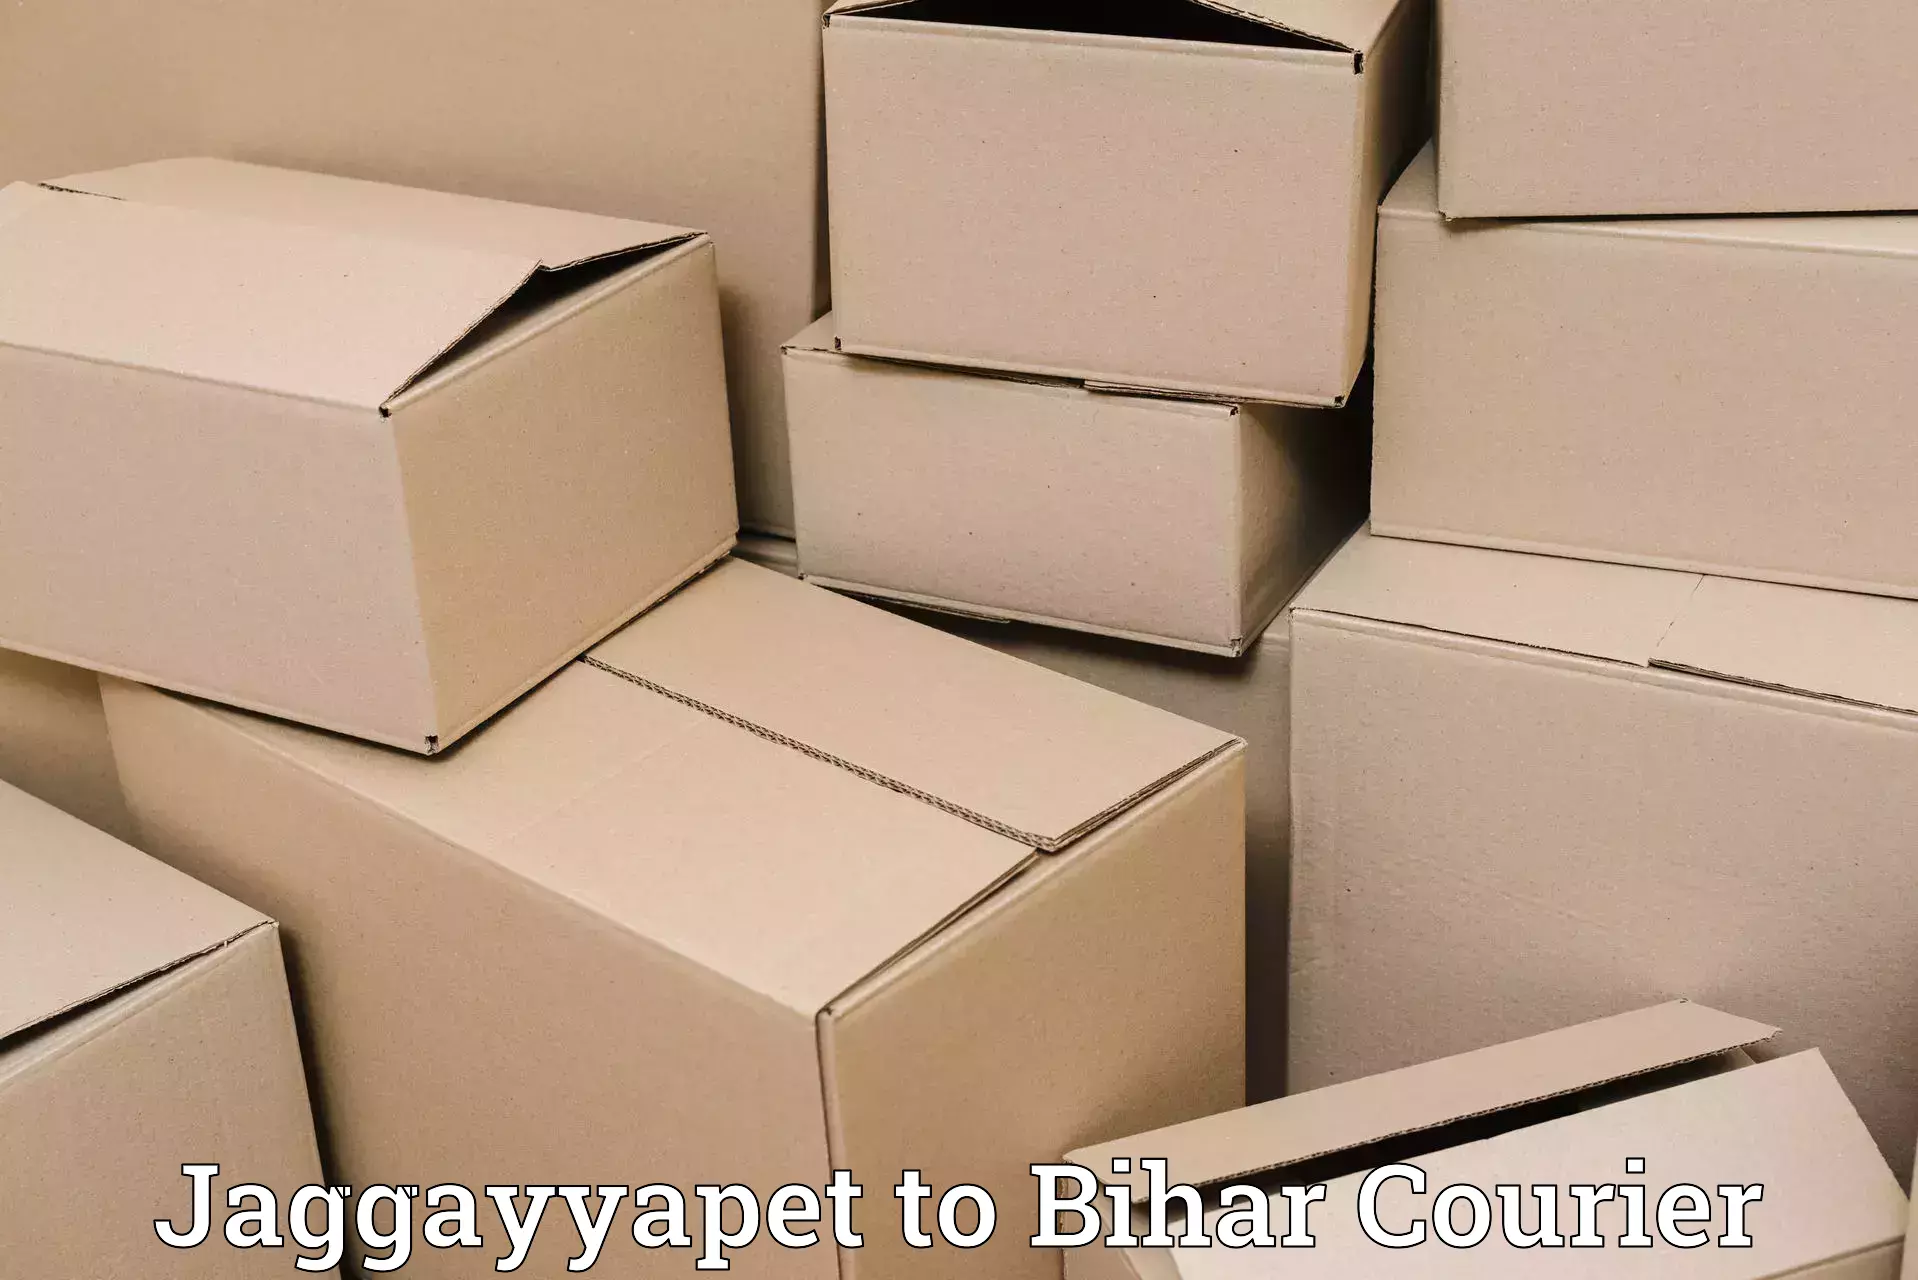 Pharmaceutical courier in Jaggayyapet to Dighwara